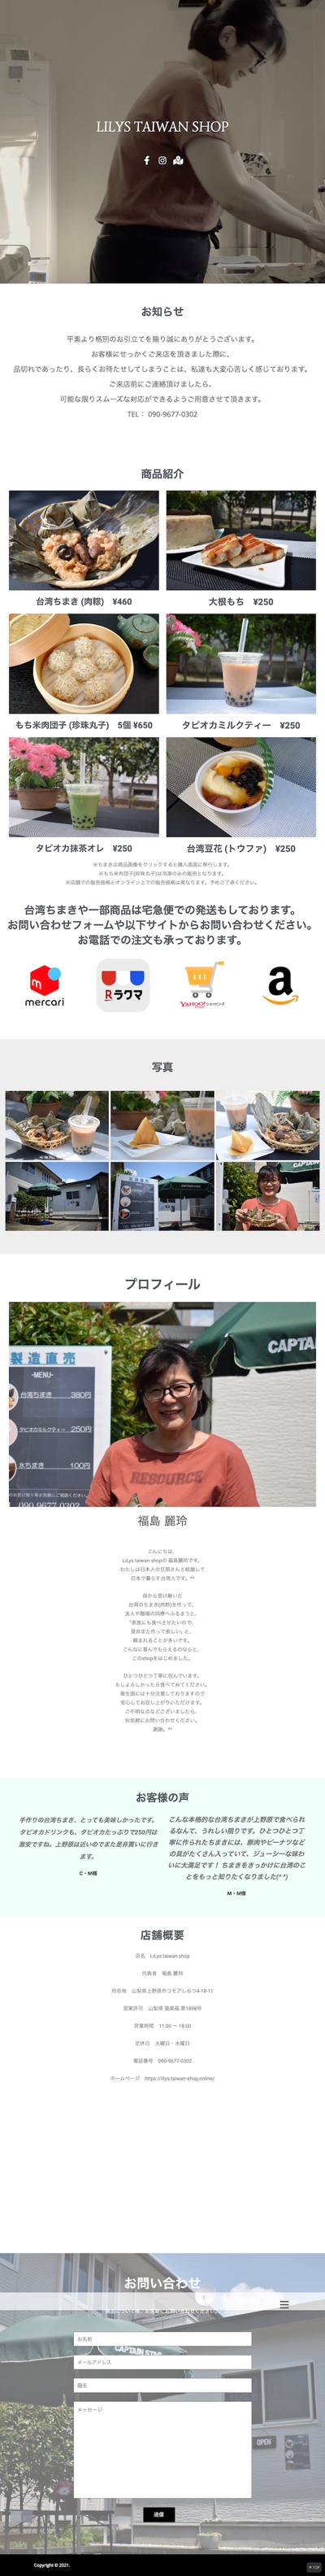 山梨県にある台湾料理店「lilys taiwan shop」のホームページ制作